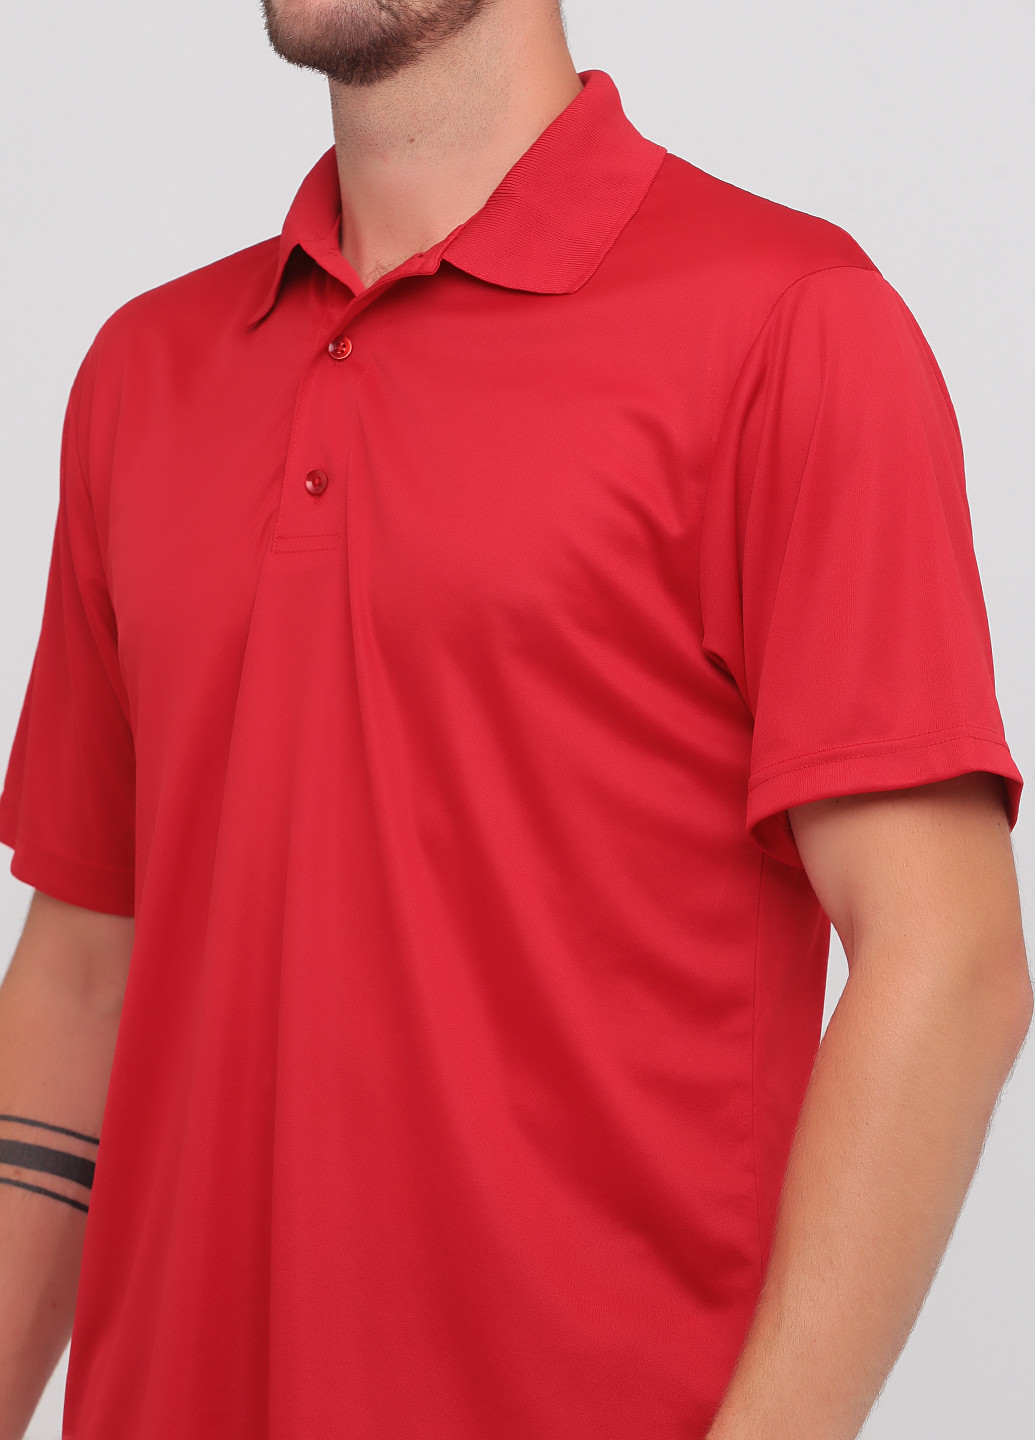 Красная футболка-поло для мужчин Paragon однотонная